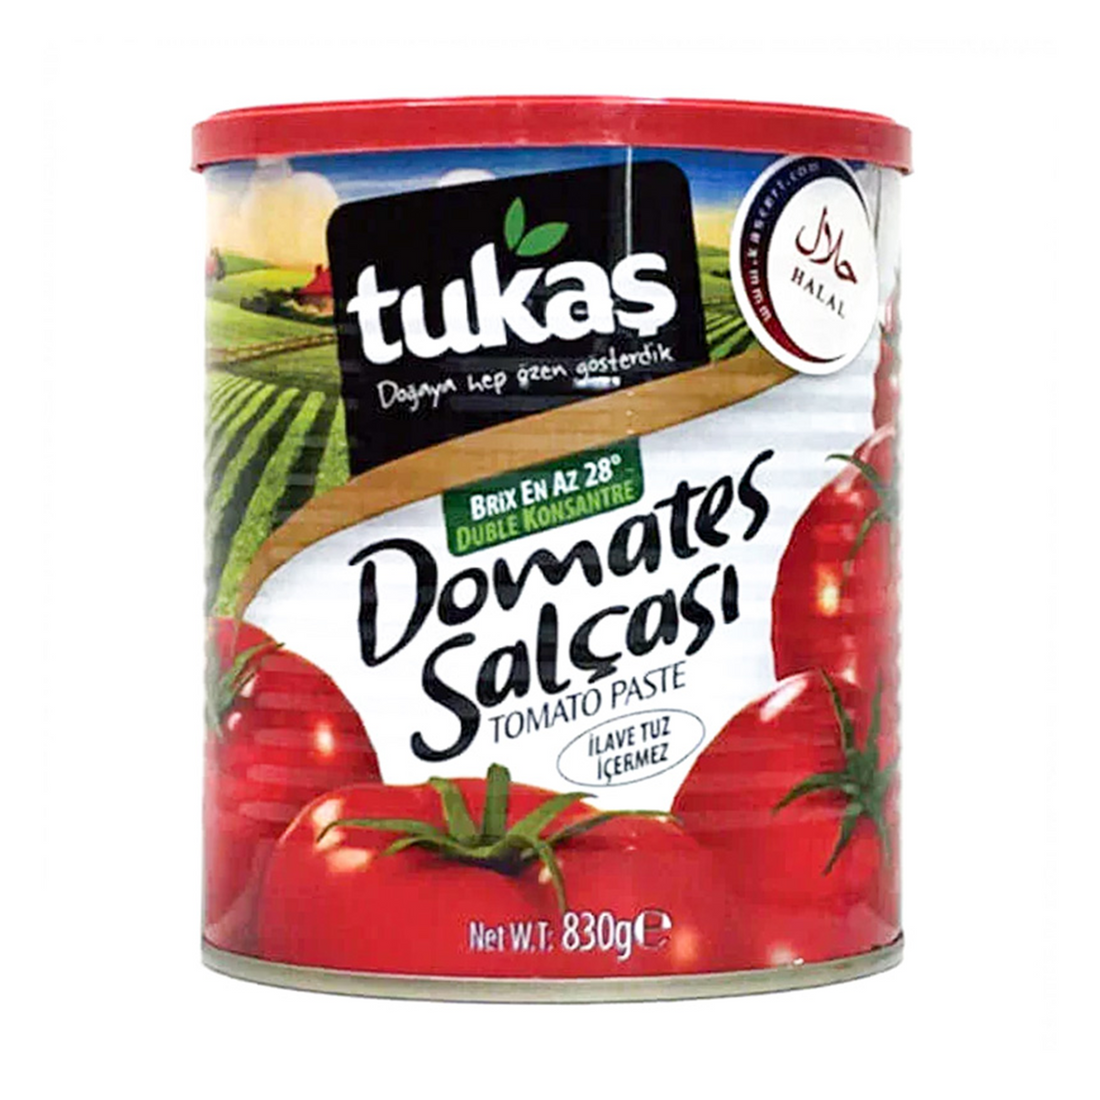 Tukas Canned Tomato Paste 830g Made in Turkey | Tukas Domates Salcasi | Tomato Paste